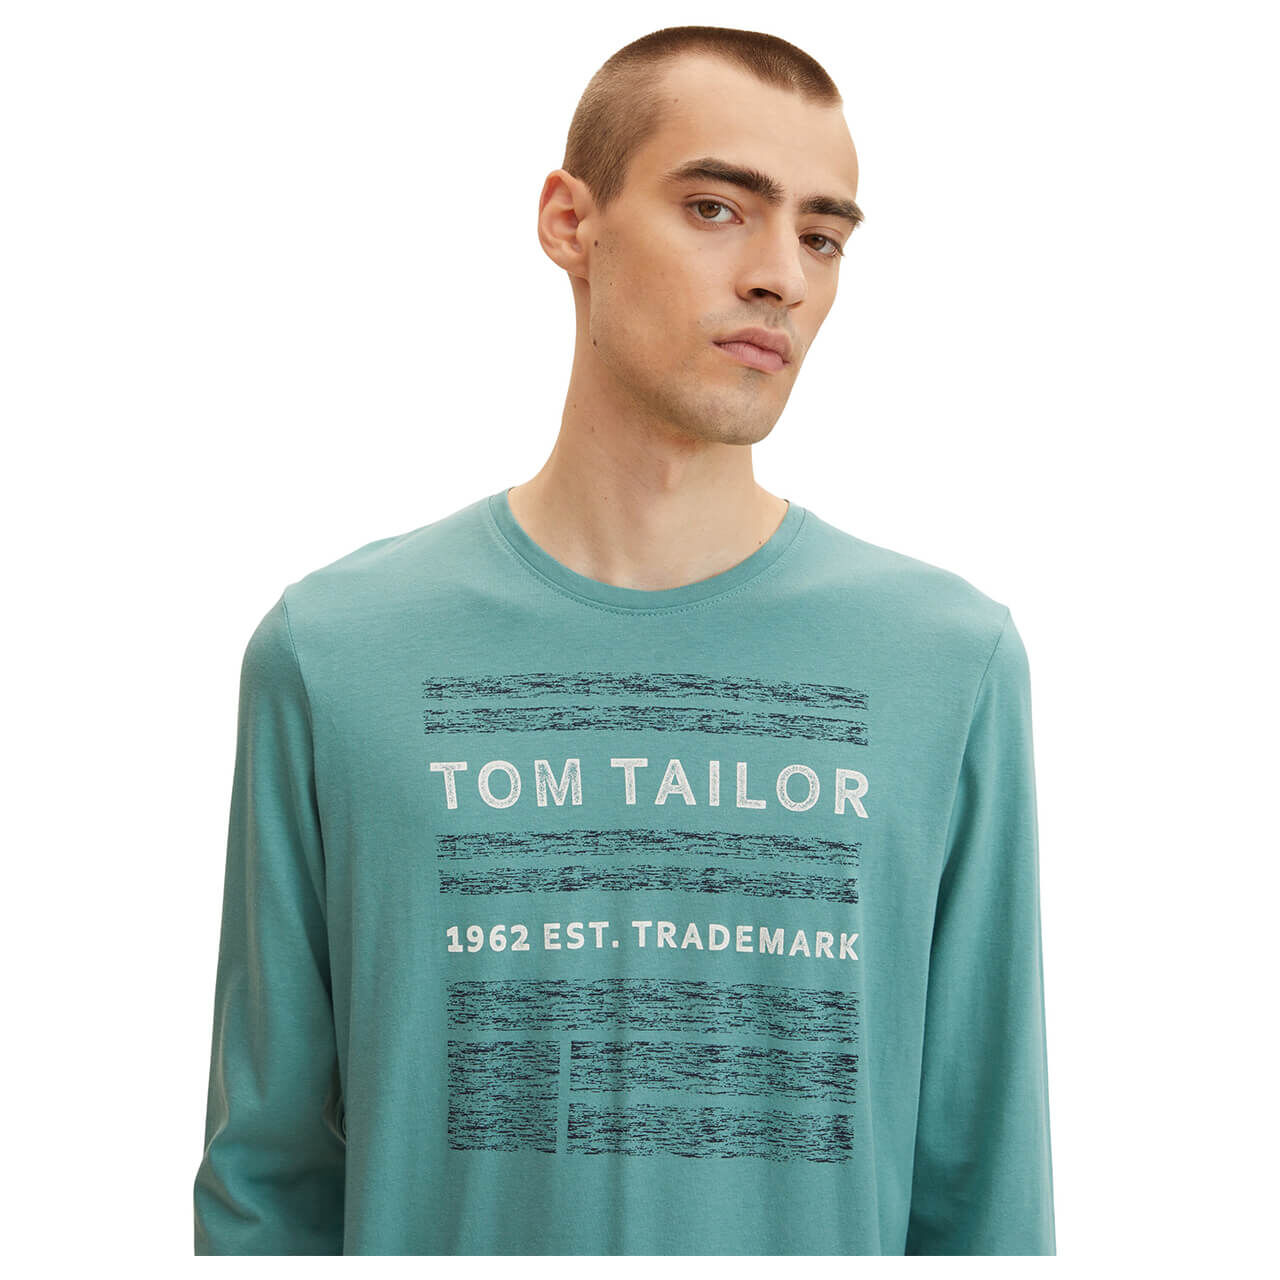 Tom Tailor Herren Langarm Shirt salvia print